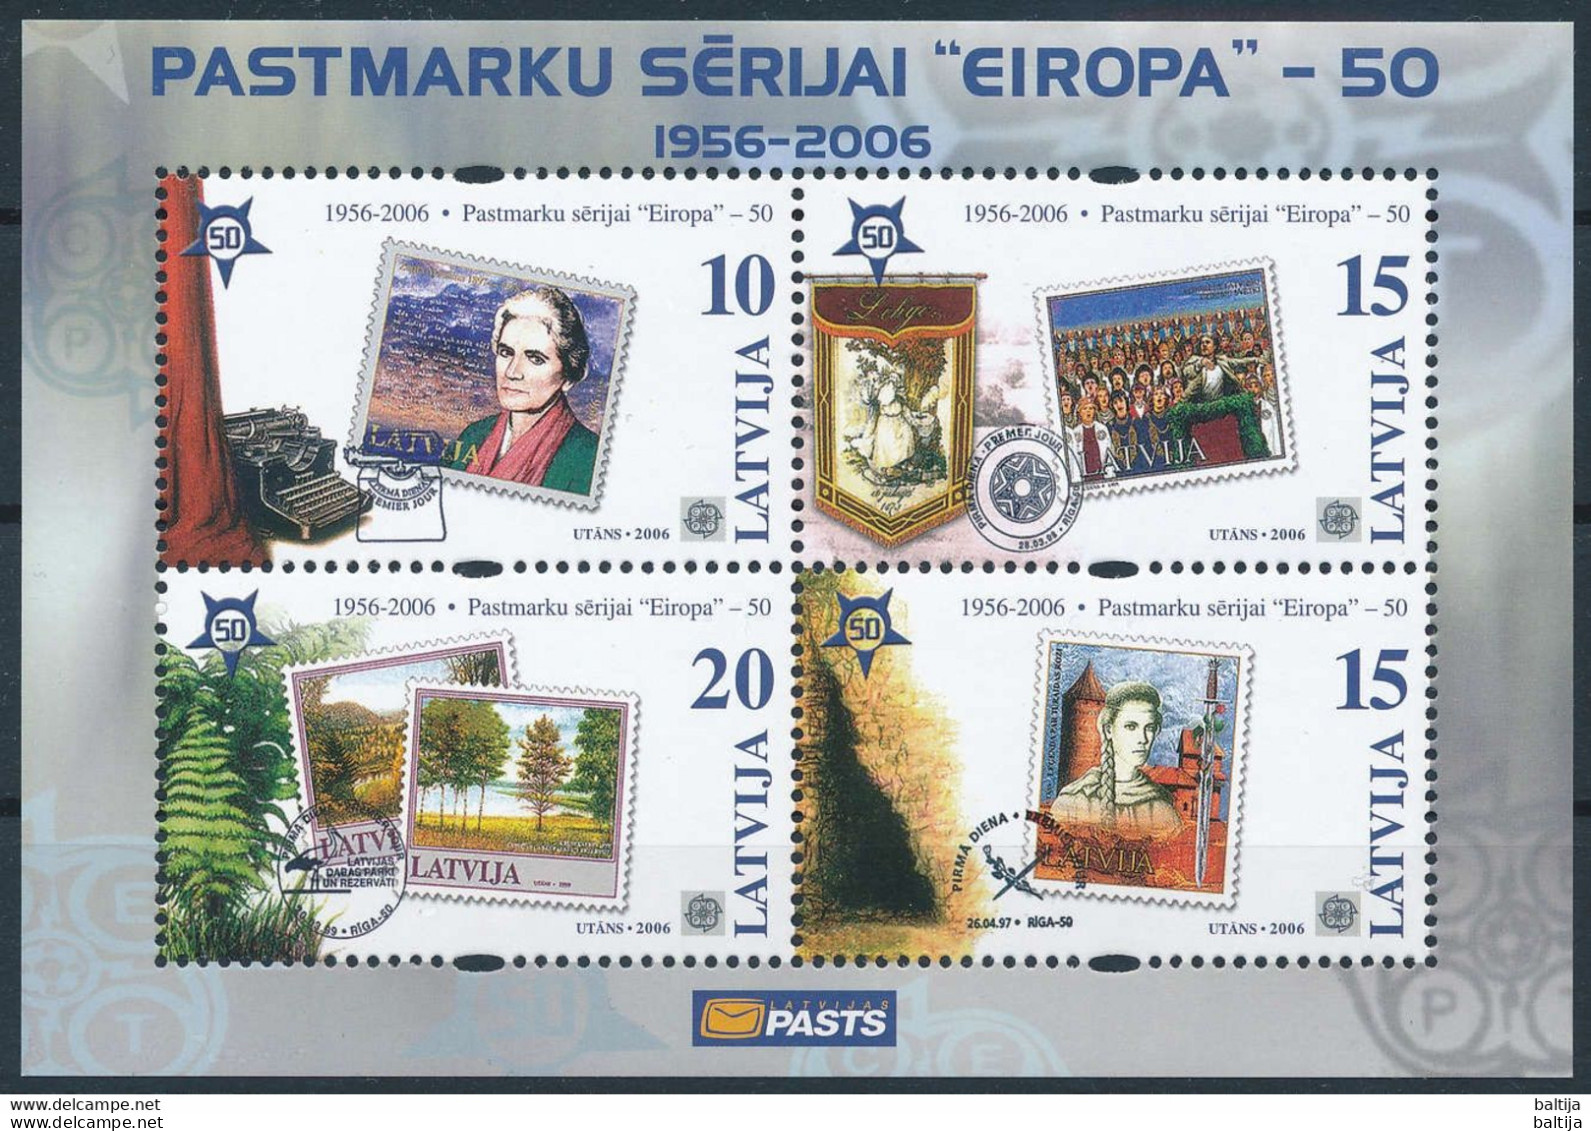 Latvia, Mi Block 21 ** MNH / CEPT Europa 50th Anniversary, Stamp On Stamp - Briefmarken Auf Briefmarken